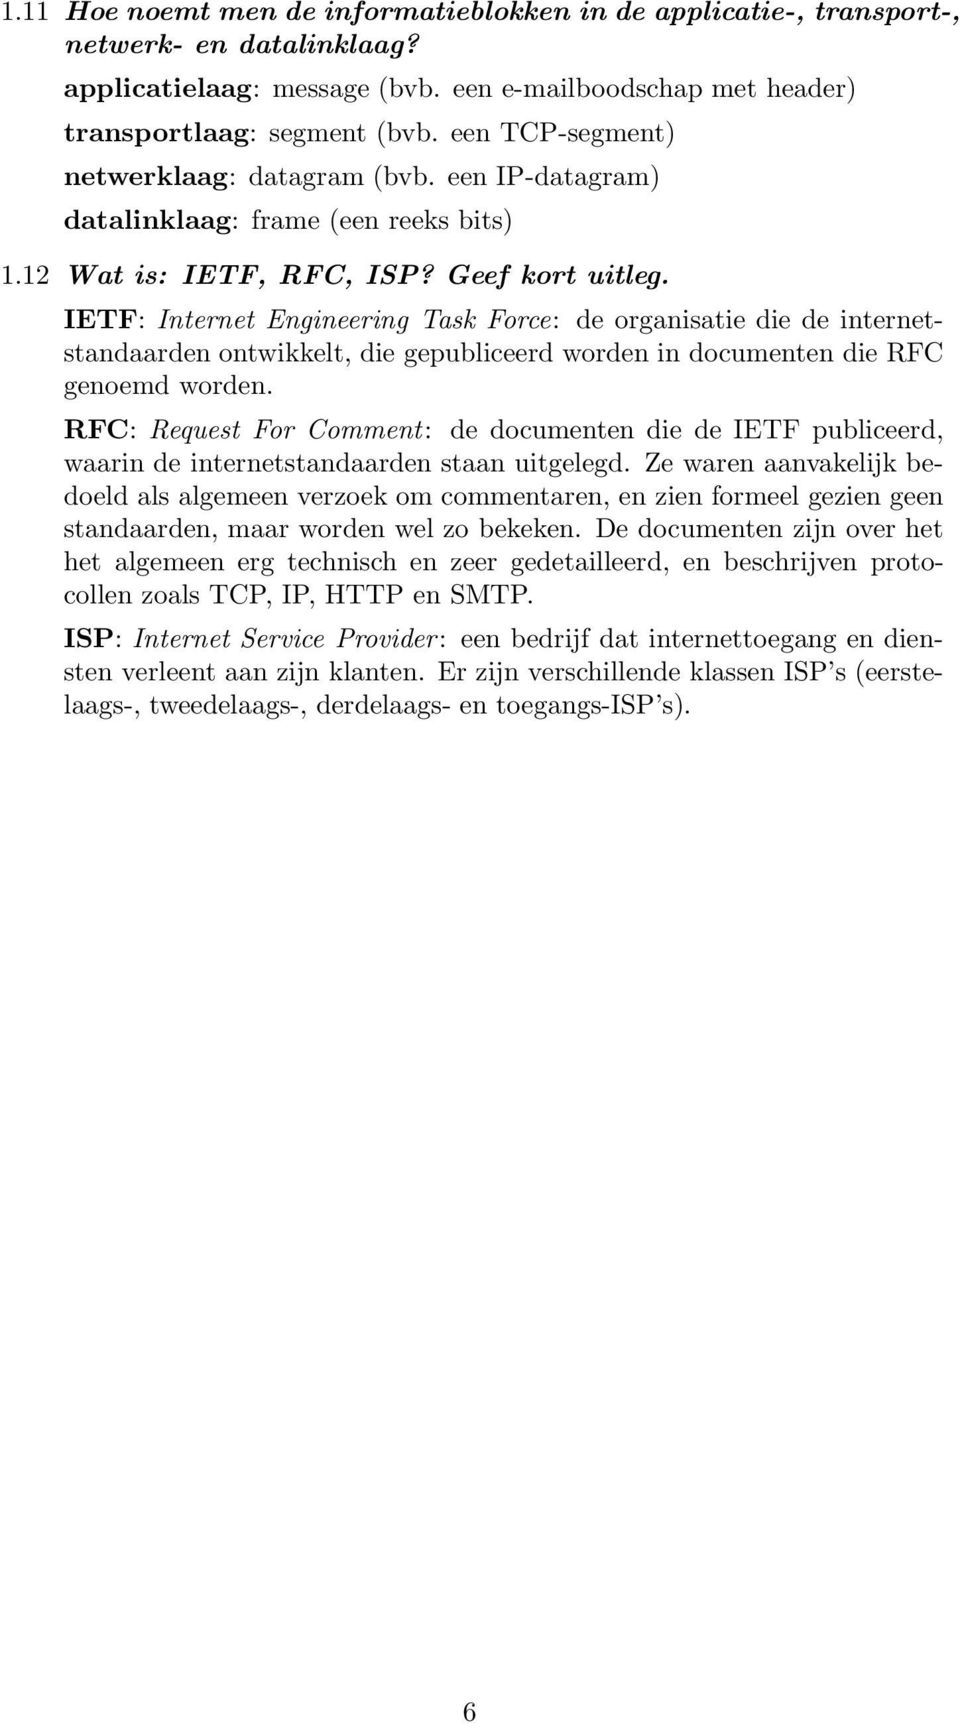 IETF: Internet Engineering Task Force: de organisatie die de internetstandaarden ontwikkelt, die gepubliceerd worden in documenten die RFC genoemd worden.